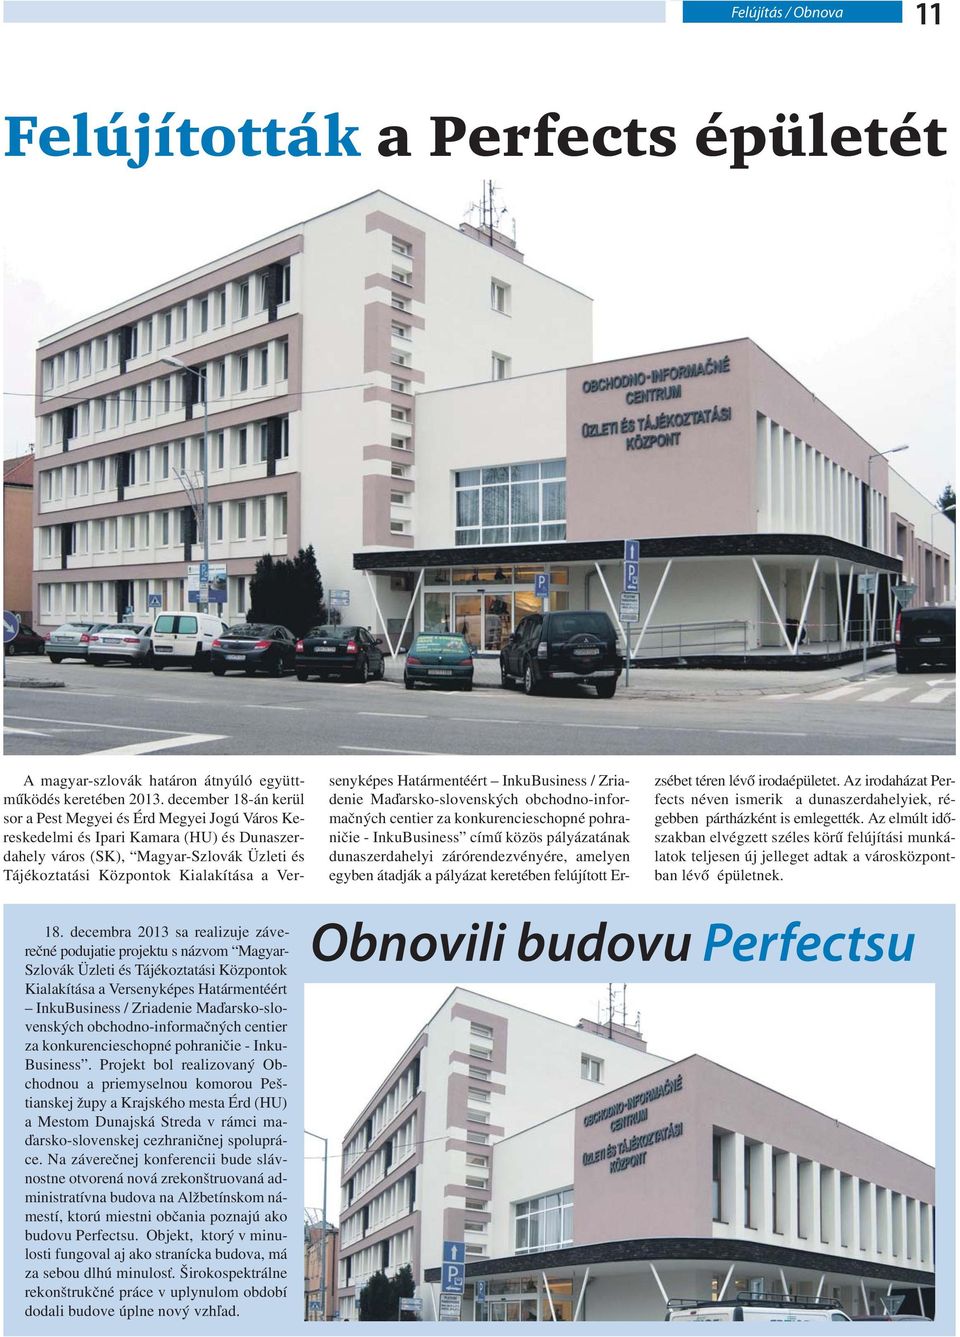 Maďarsko-slovenských obchodno-informačných centier za konkurencieschopné pohraničie - Inku- Business.